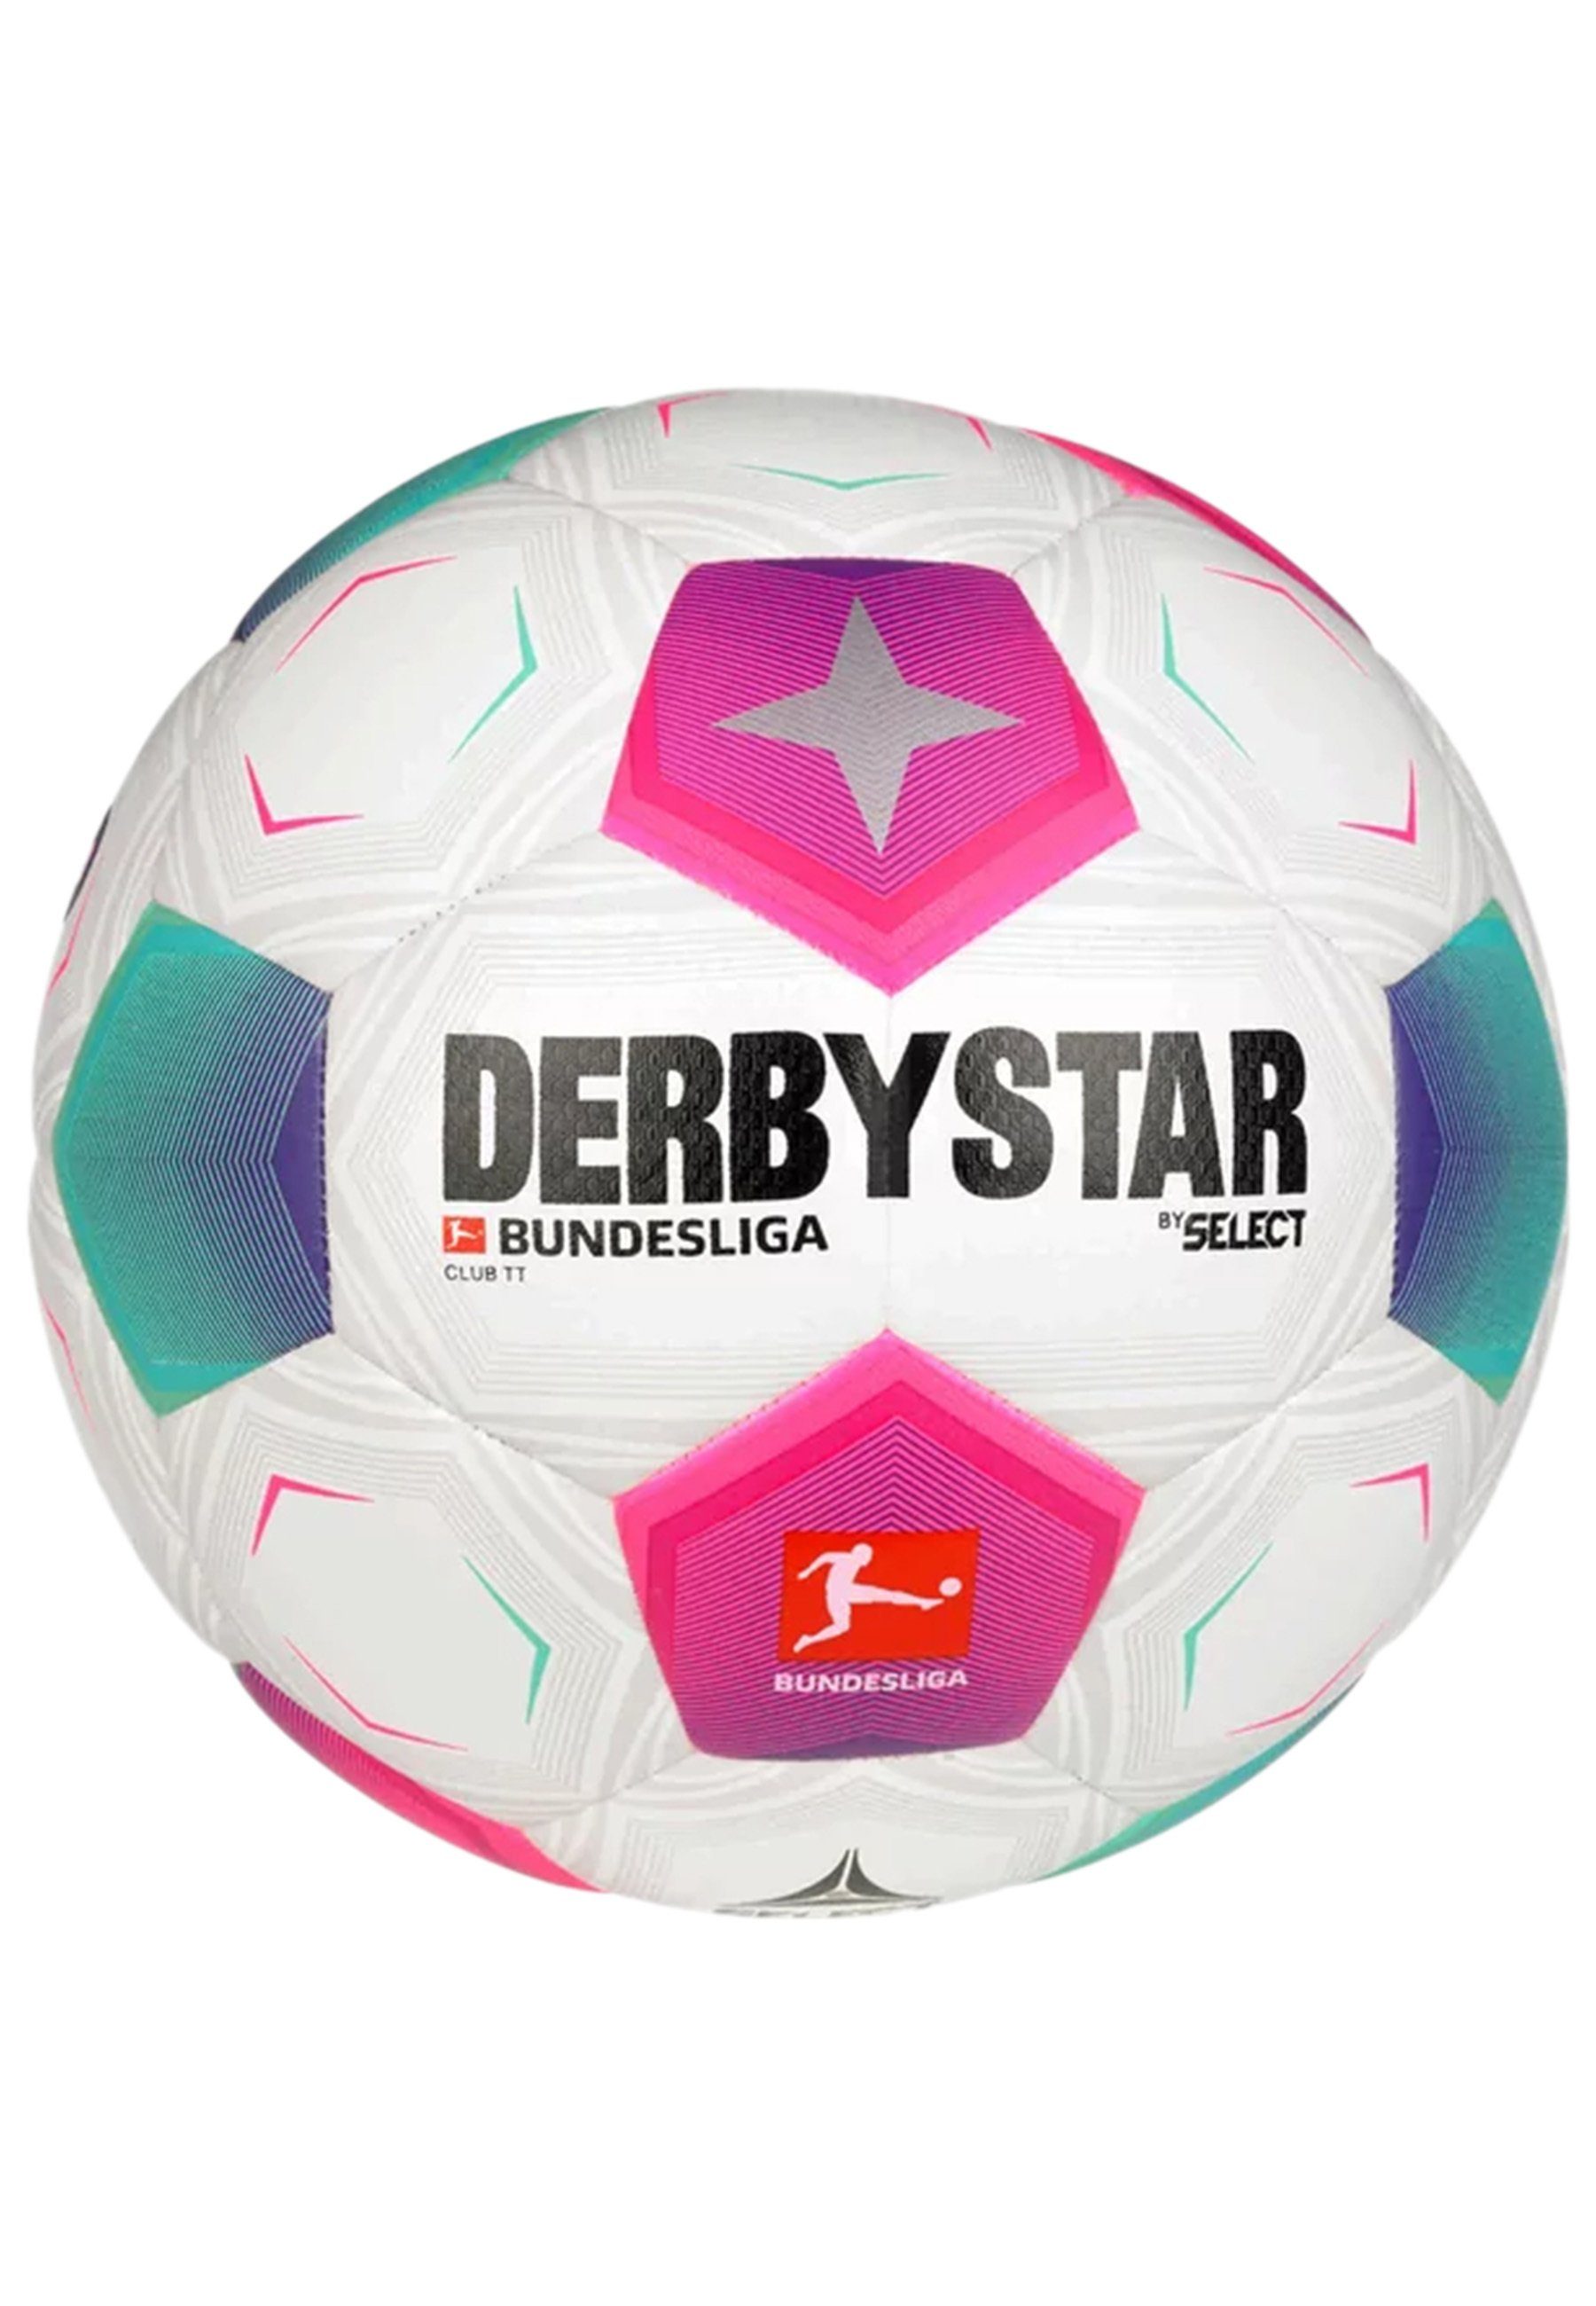 Fußball Derbystar Club TT Bundesliga